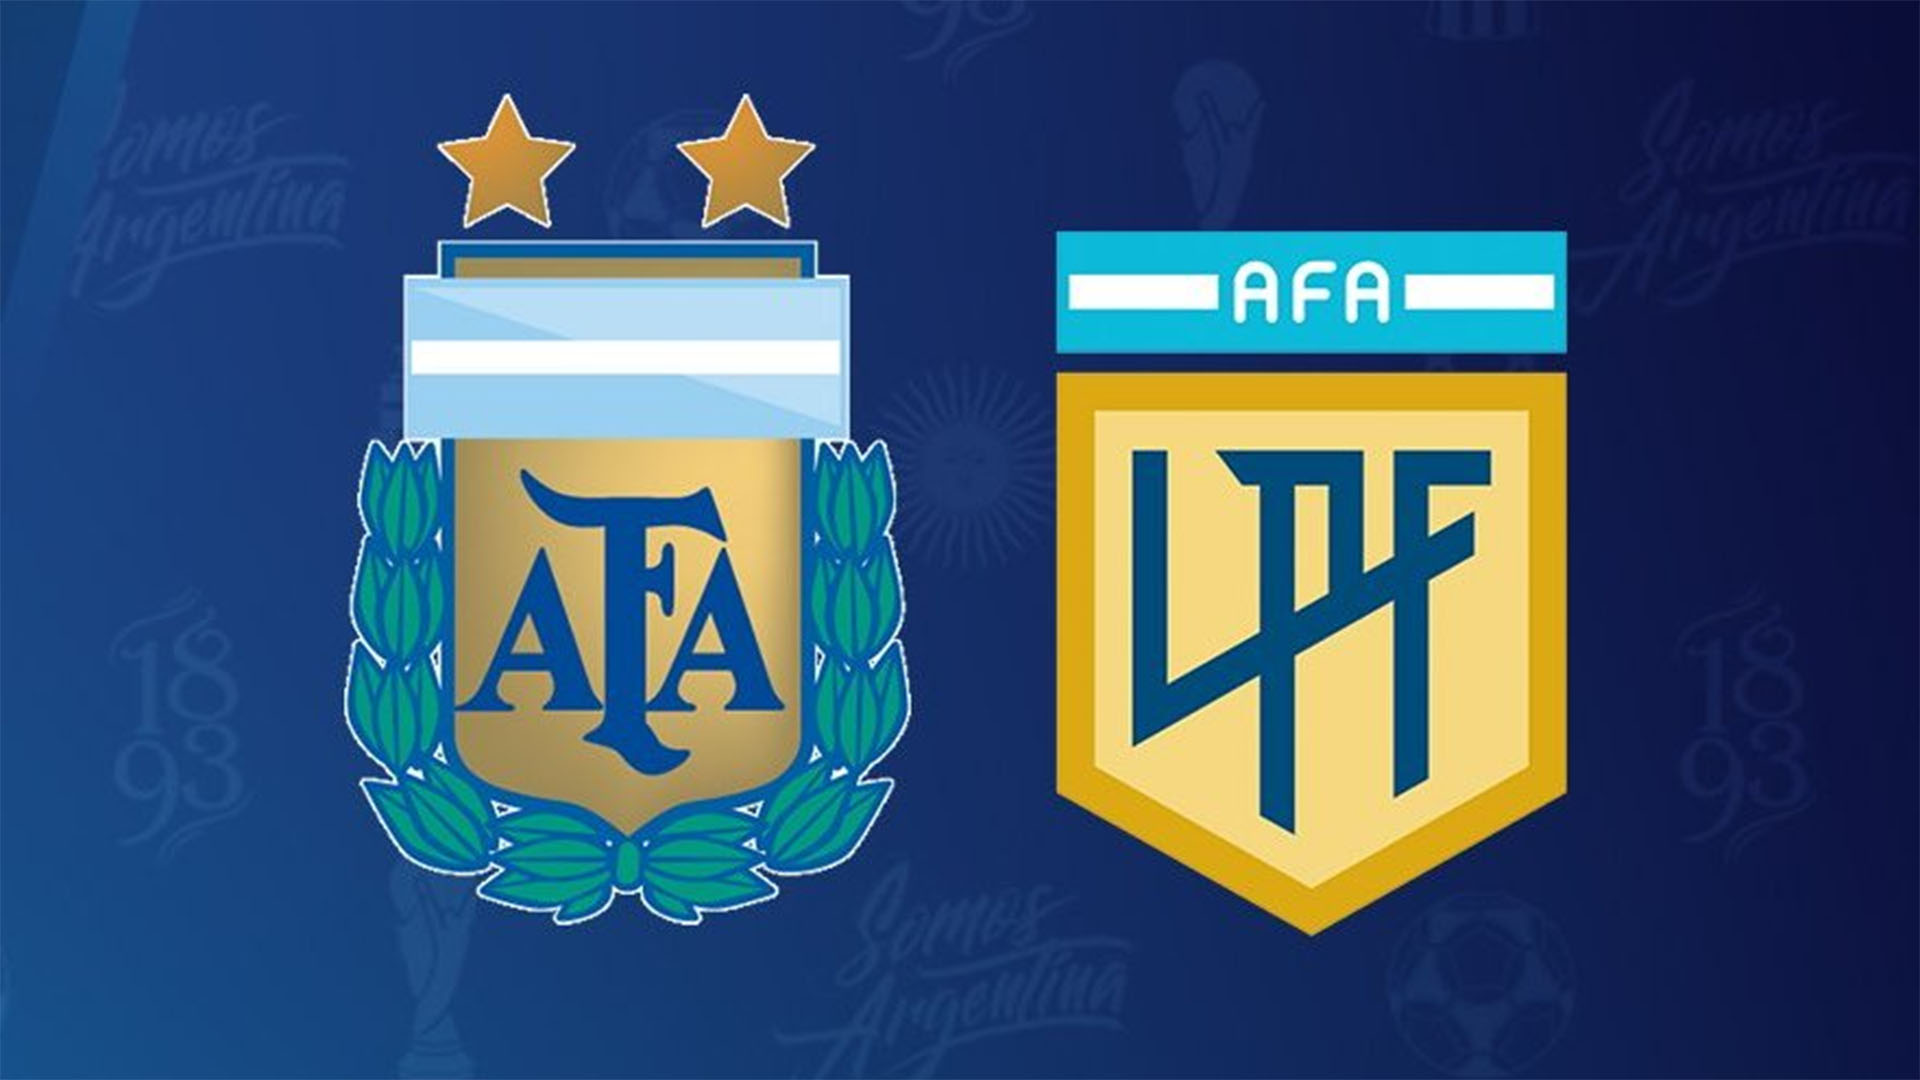 La AFA y la Liga Profesional sortearán el fixture de Primera División el próximo martes 11 de enero